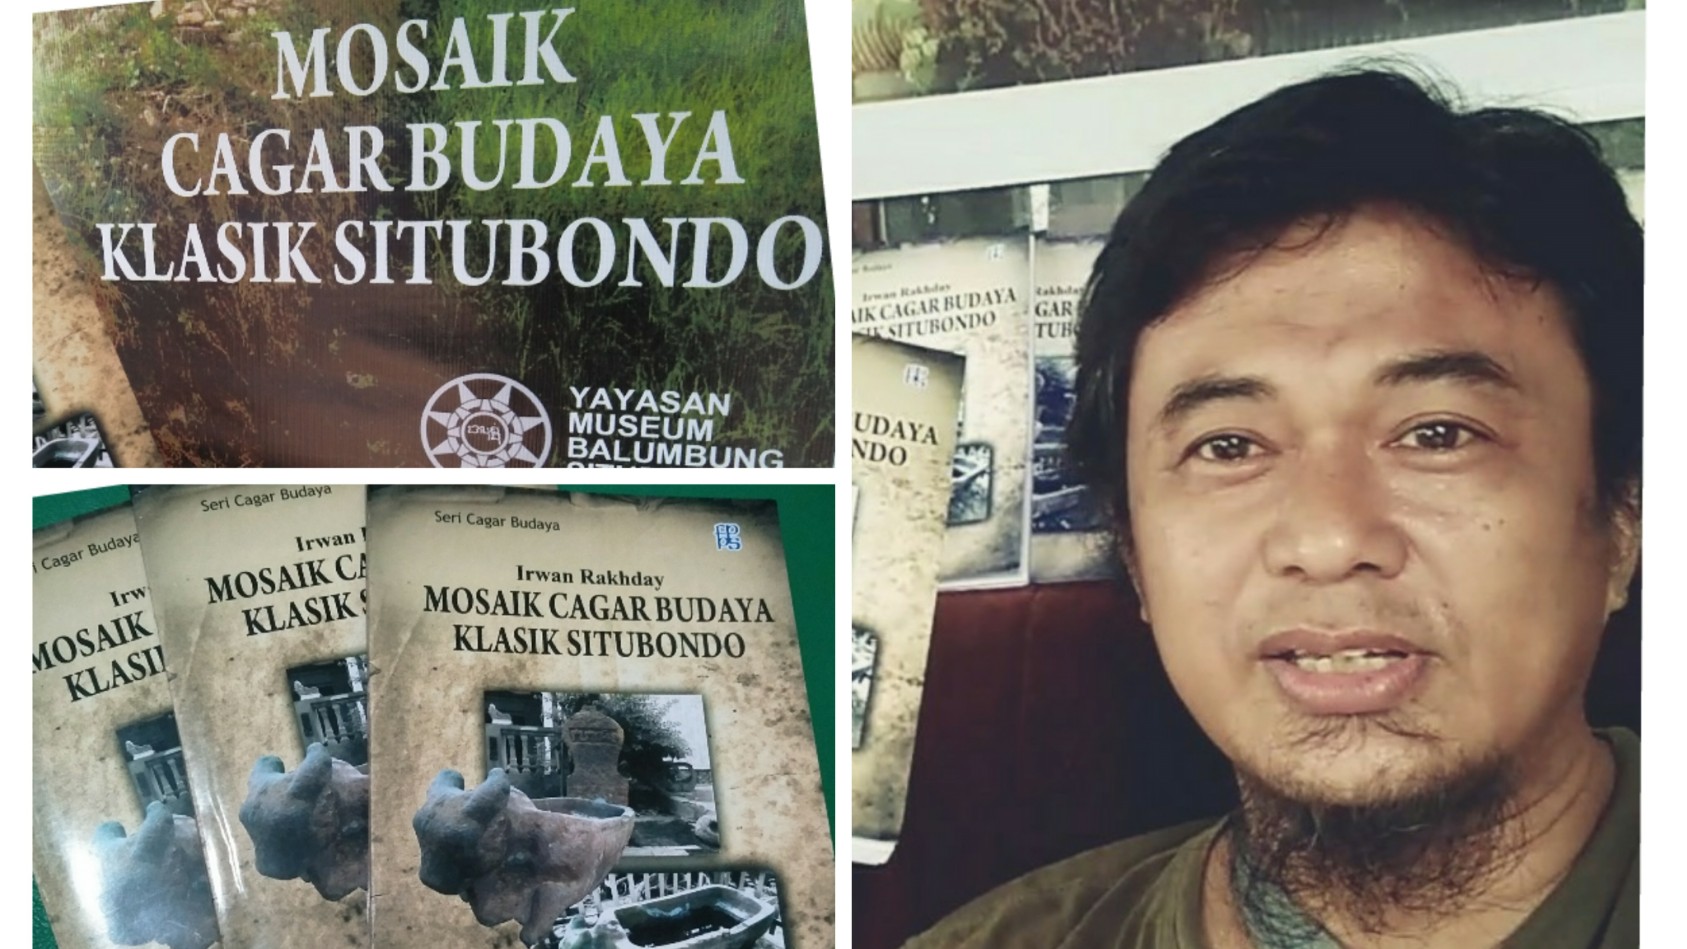 Ditulis Jurnalis suaraindonesia.co.id, Buku 'Mosaik Cagar Budaya Klasik Situbondo' Diluncurkan Via Medsos